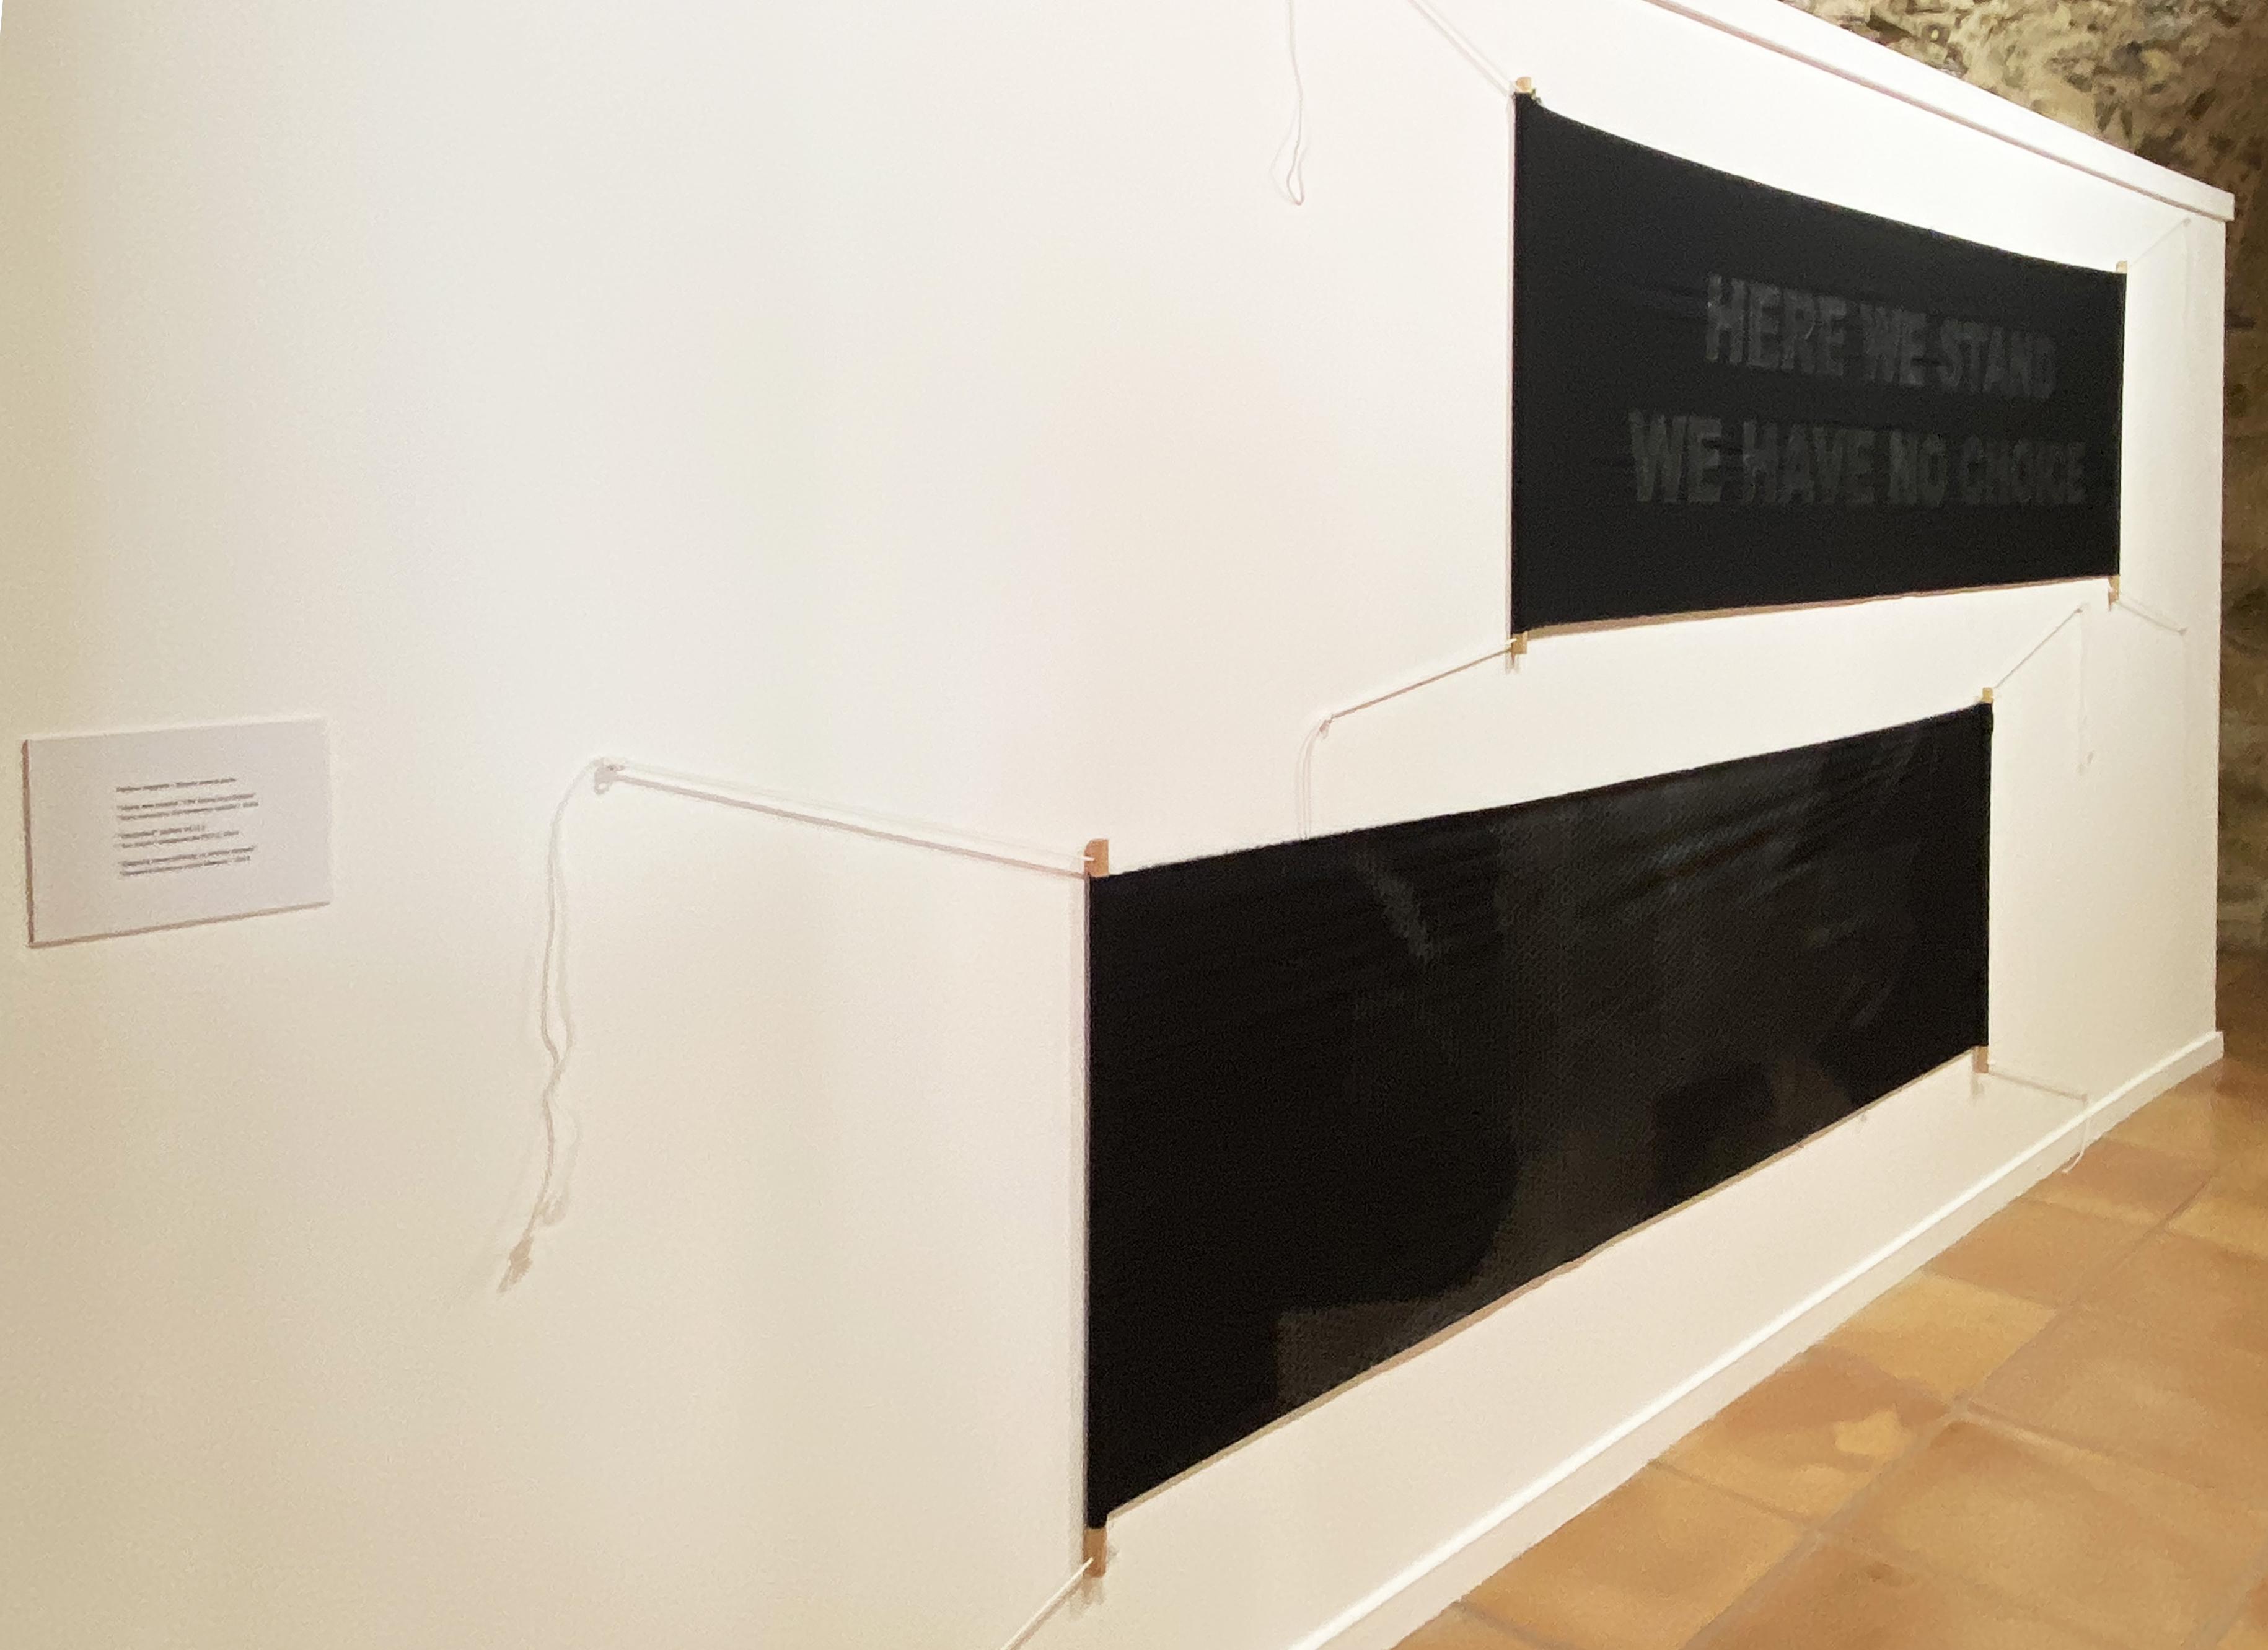 El Espacio de Arte Experimental del Fonseca presenta la exposición de Fernando José Pereira